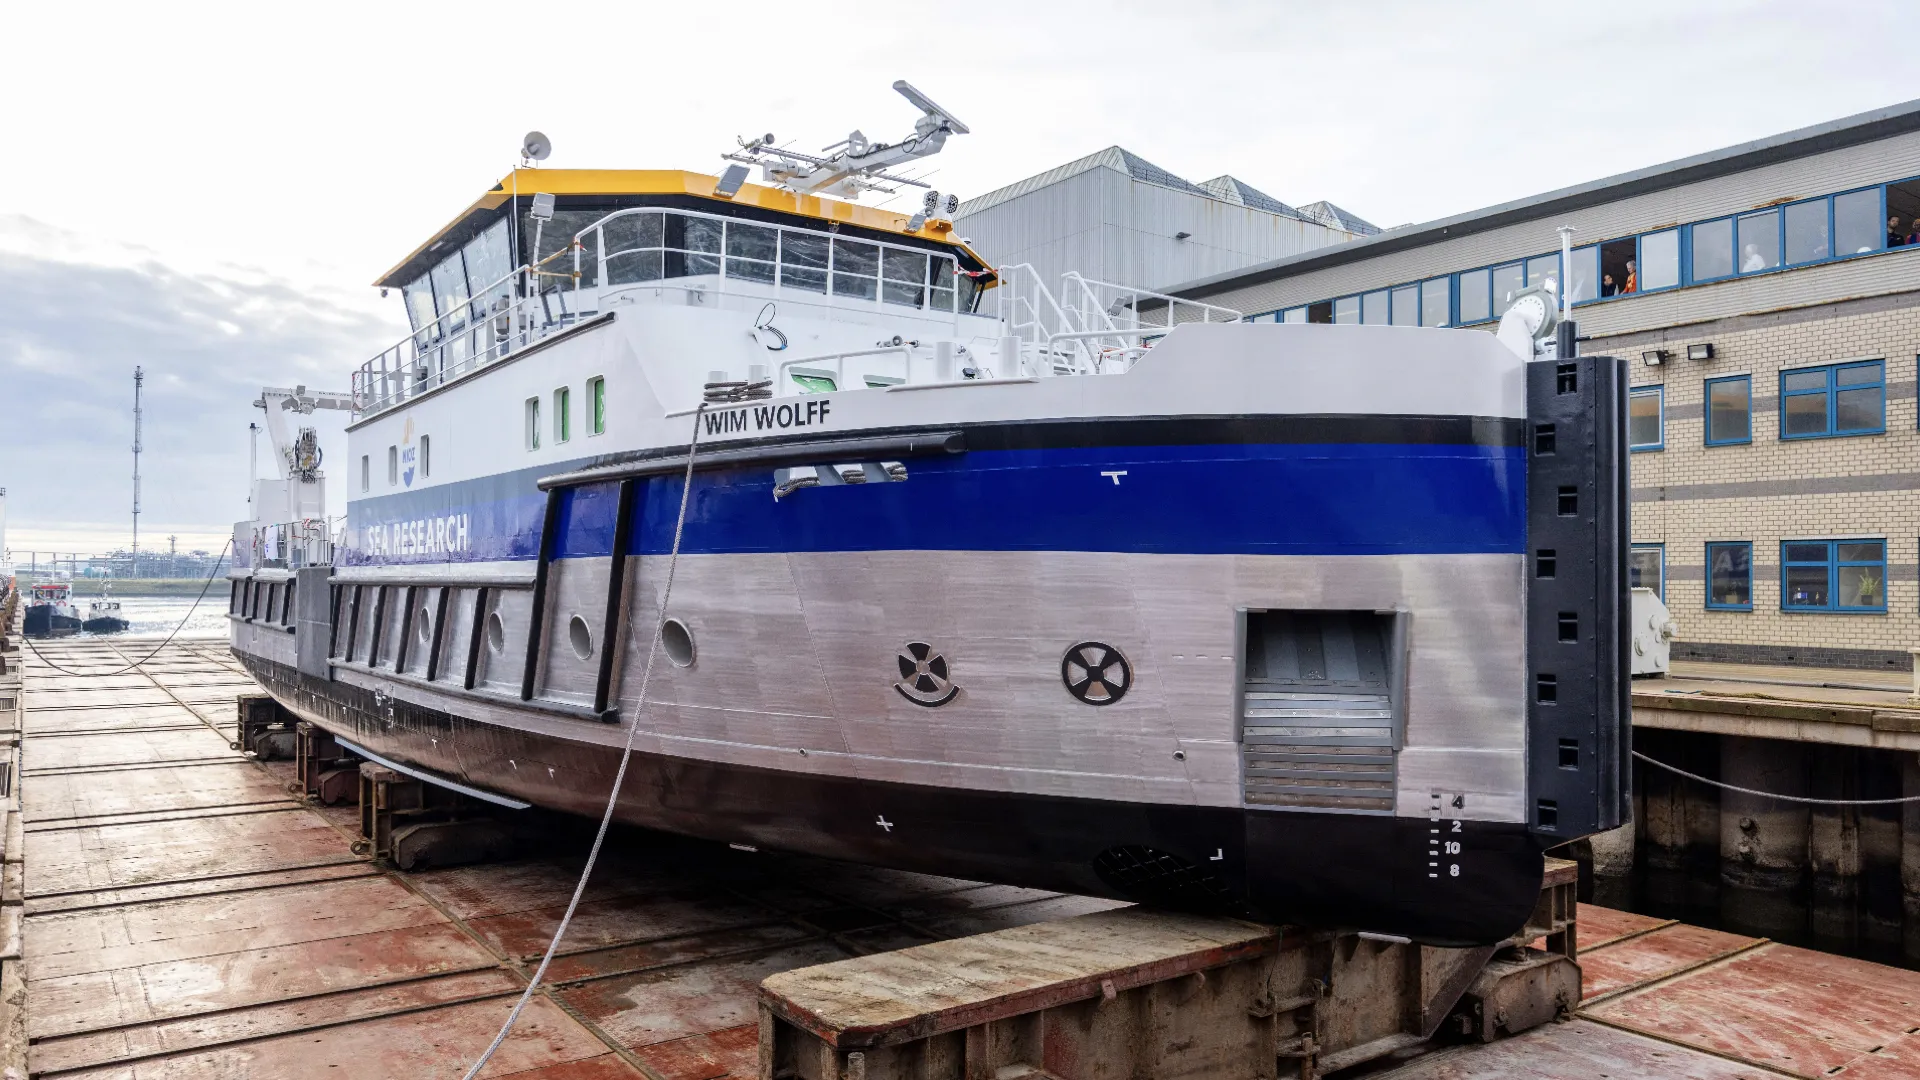 Dit onderzoeksvaartuig, van het Koninklijk Nederlands Instituut voor Onderzoek der Zee (NIOZ), heeft drie roetfilters.